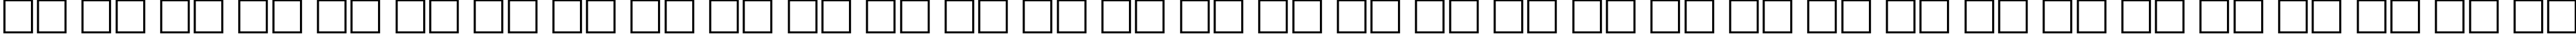 Пример написания русского алфавита шрифтом CyrillicTimesBold